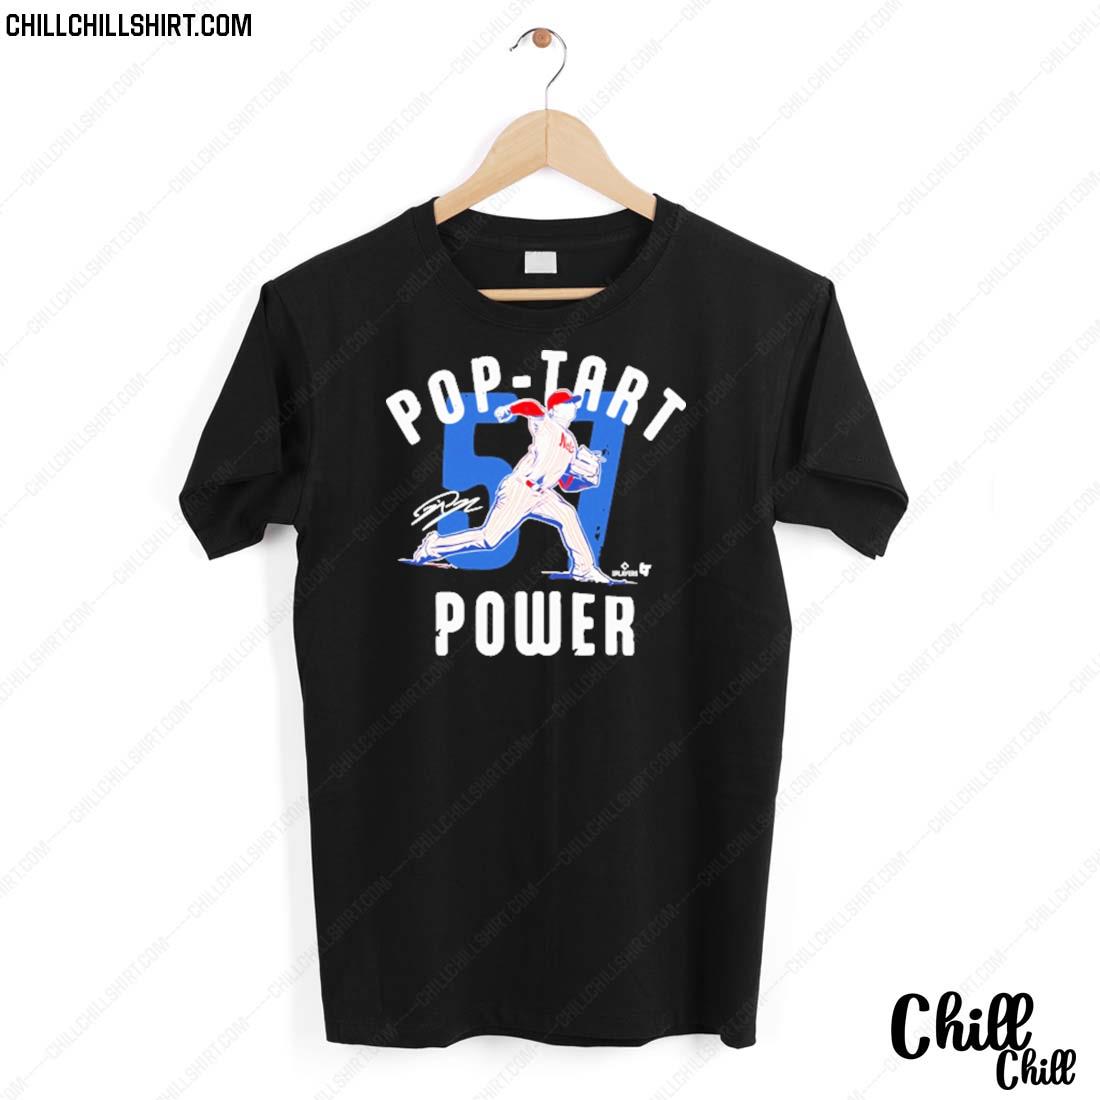 Nice pop Tart Power T-shirt